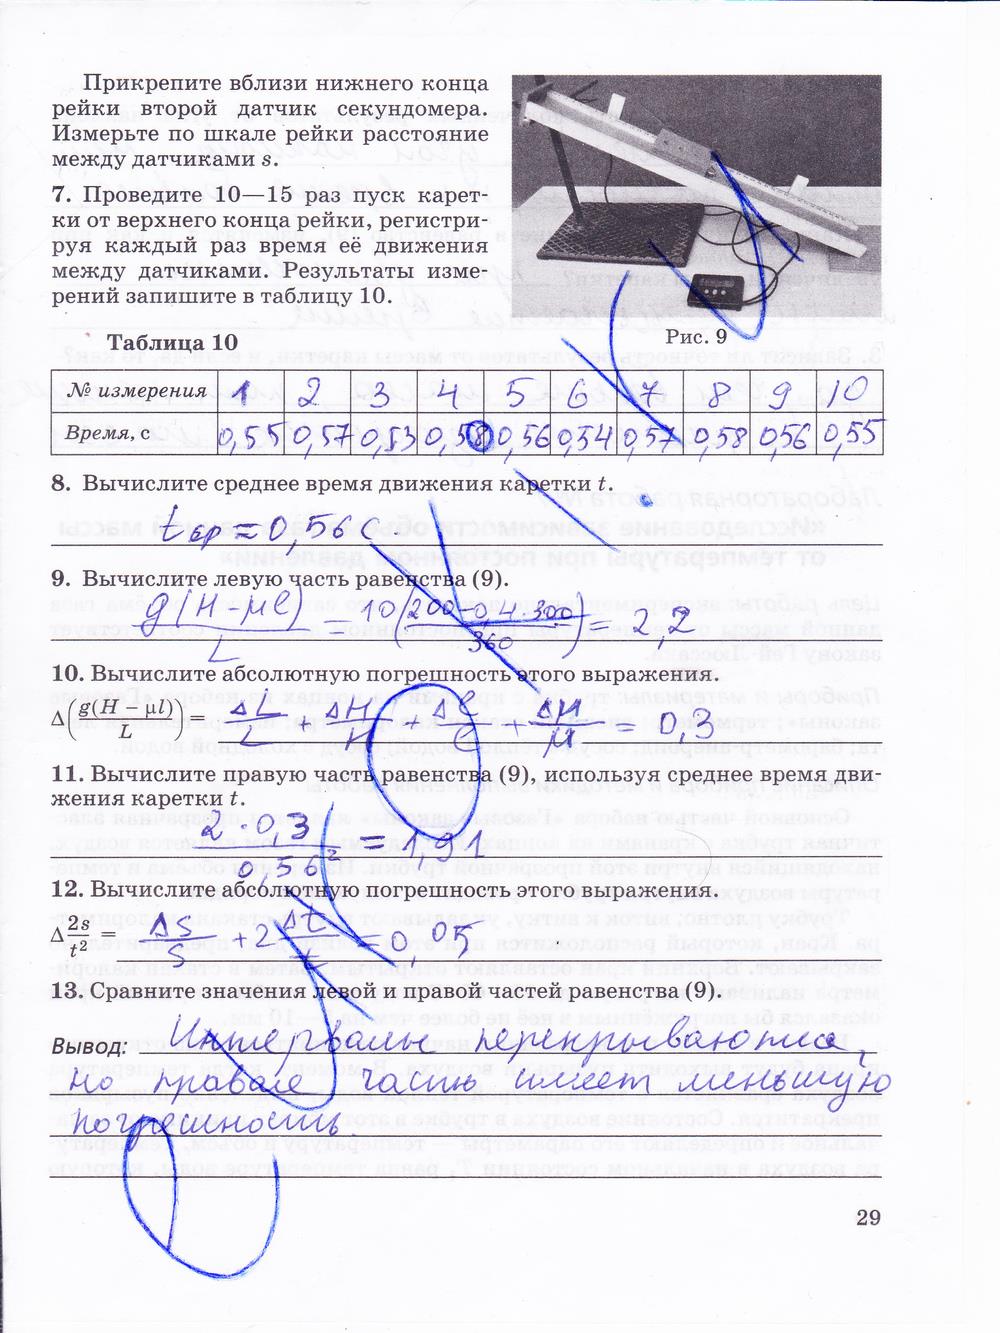 гдз 10 класс тетрадь для лабораторных работ страница 29 физика Пурышева, Степанов